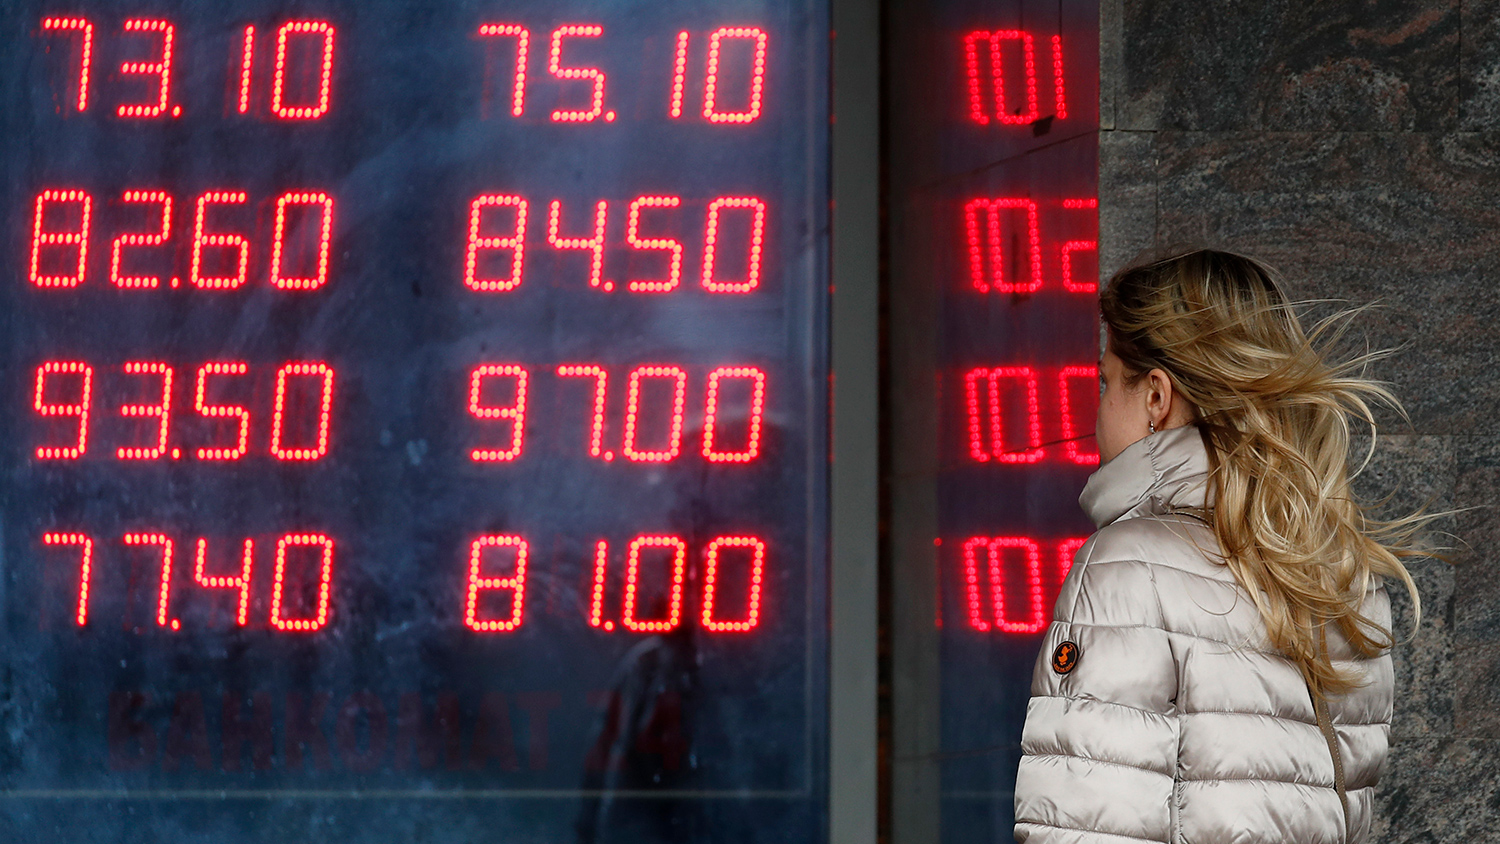 В России рекордно обвалился курс рубля: сколько стоит